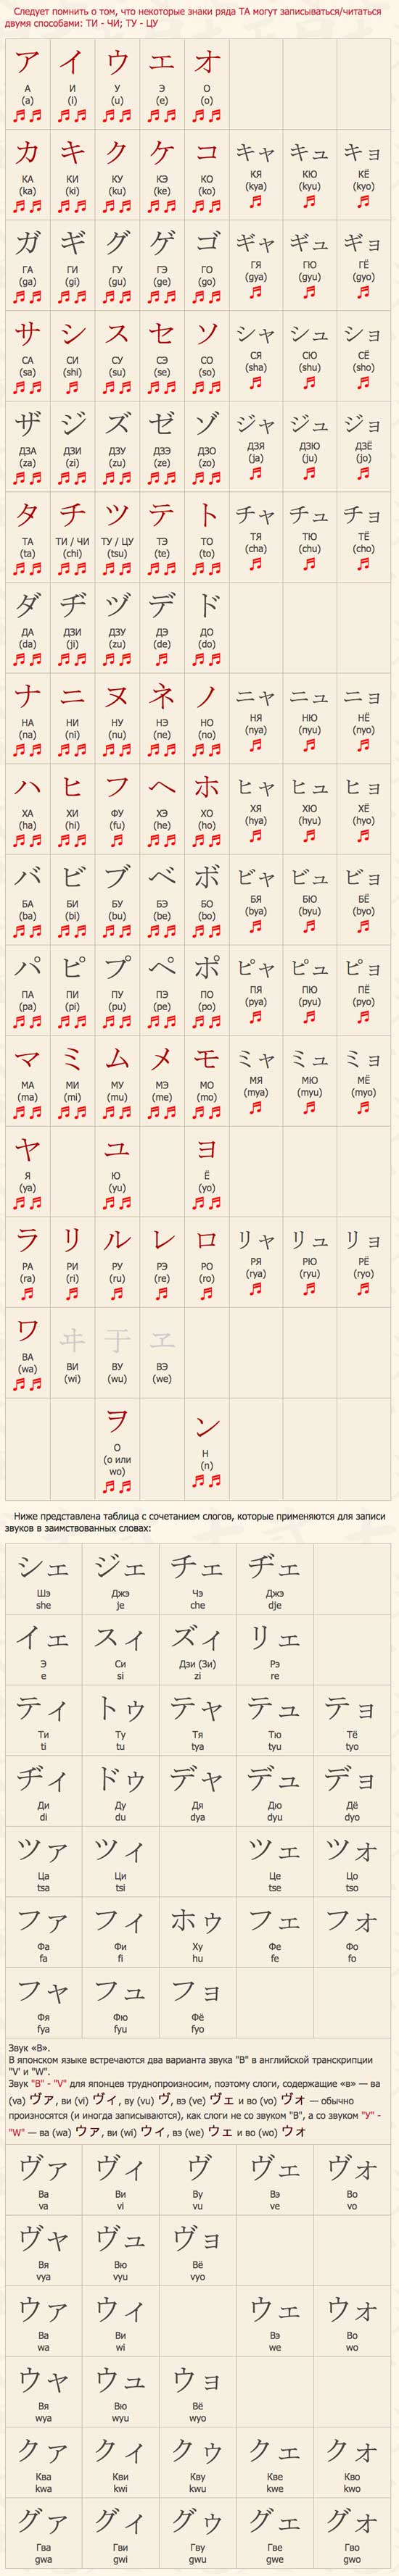 Как написать свое имя на японском языке